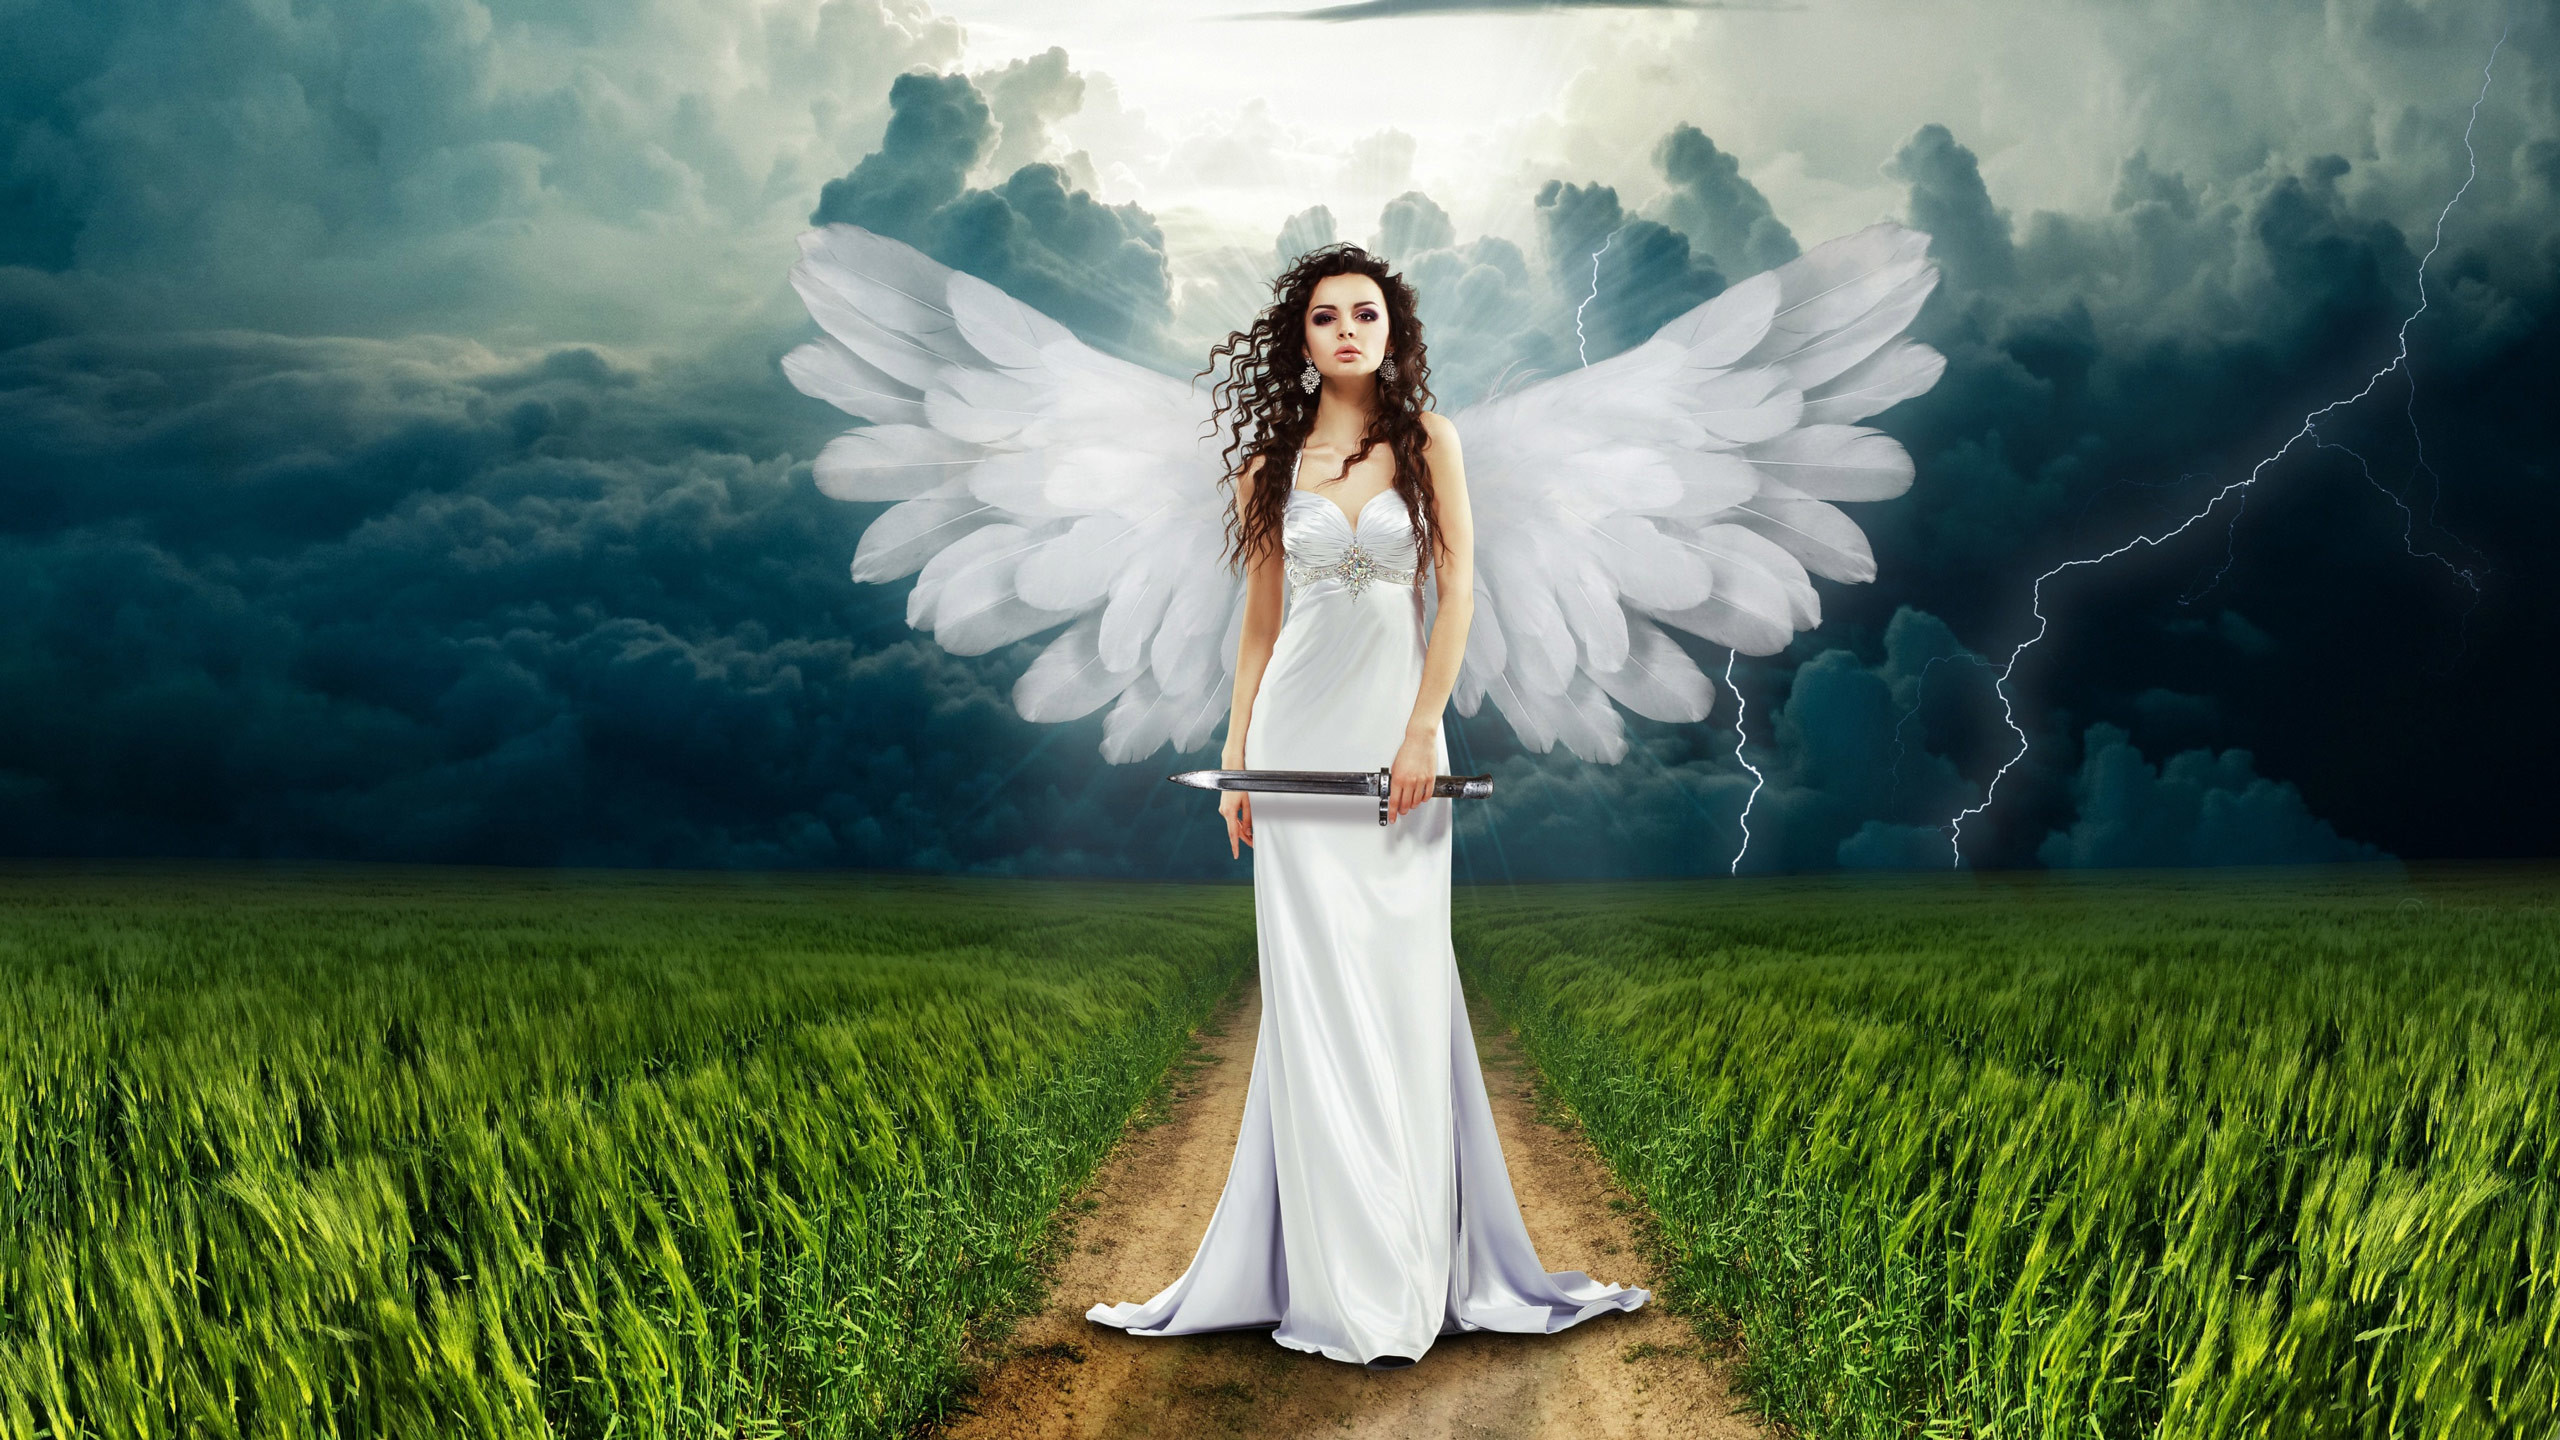 Heavenly Angels Desktop Wallpaper Image